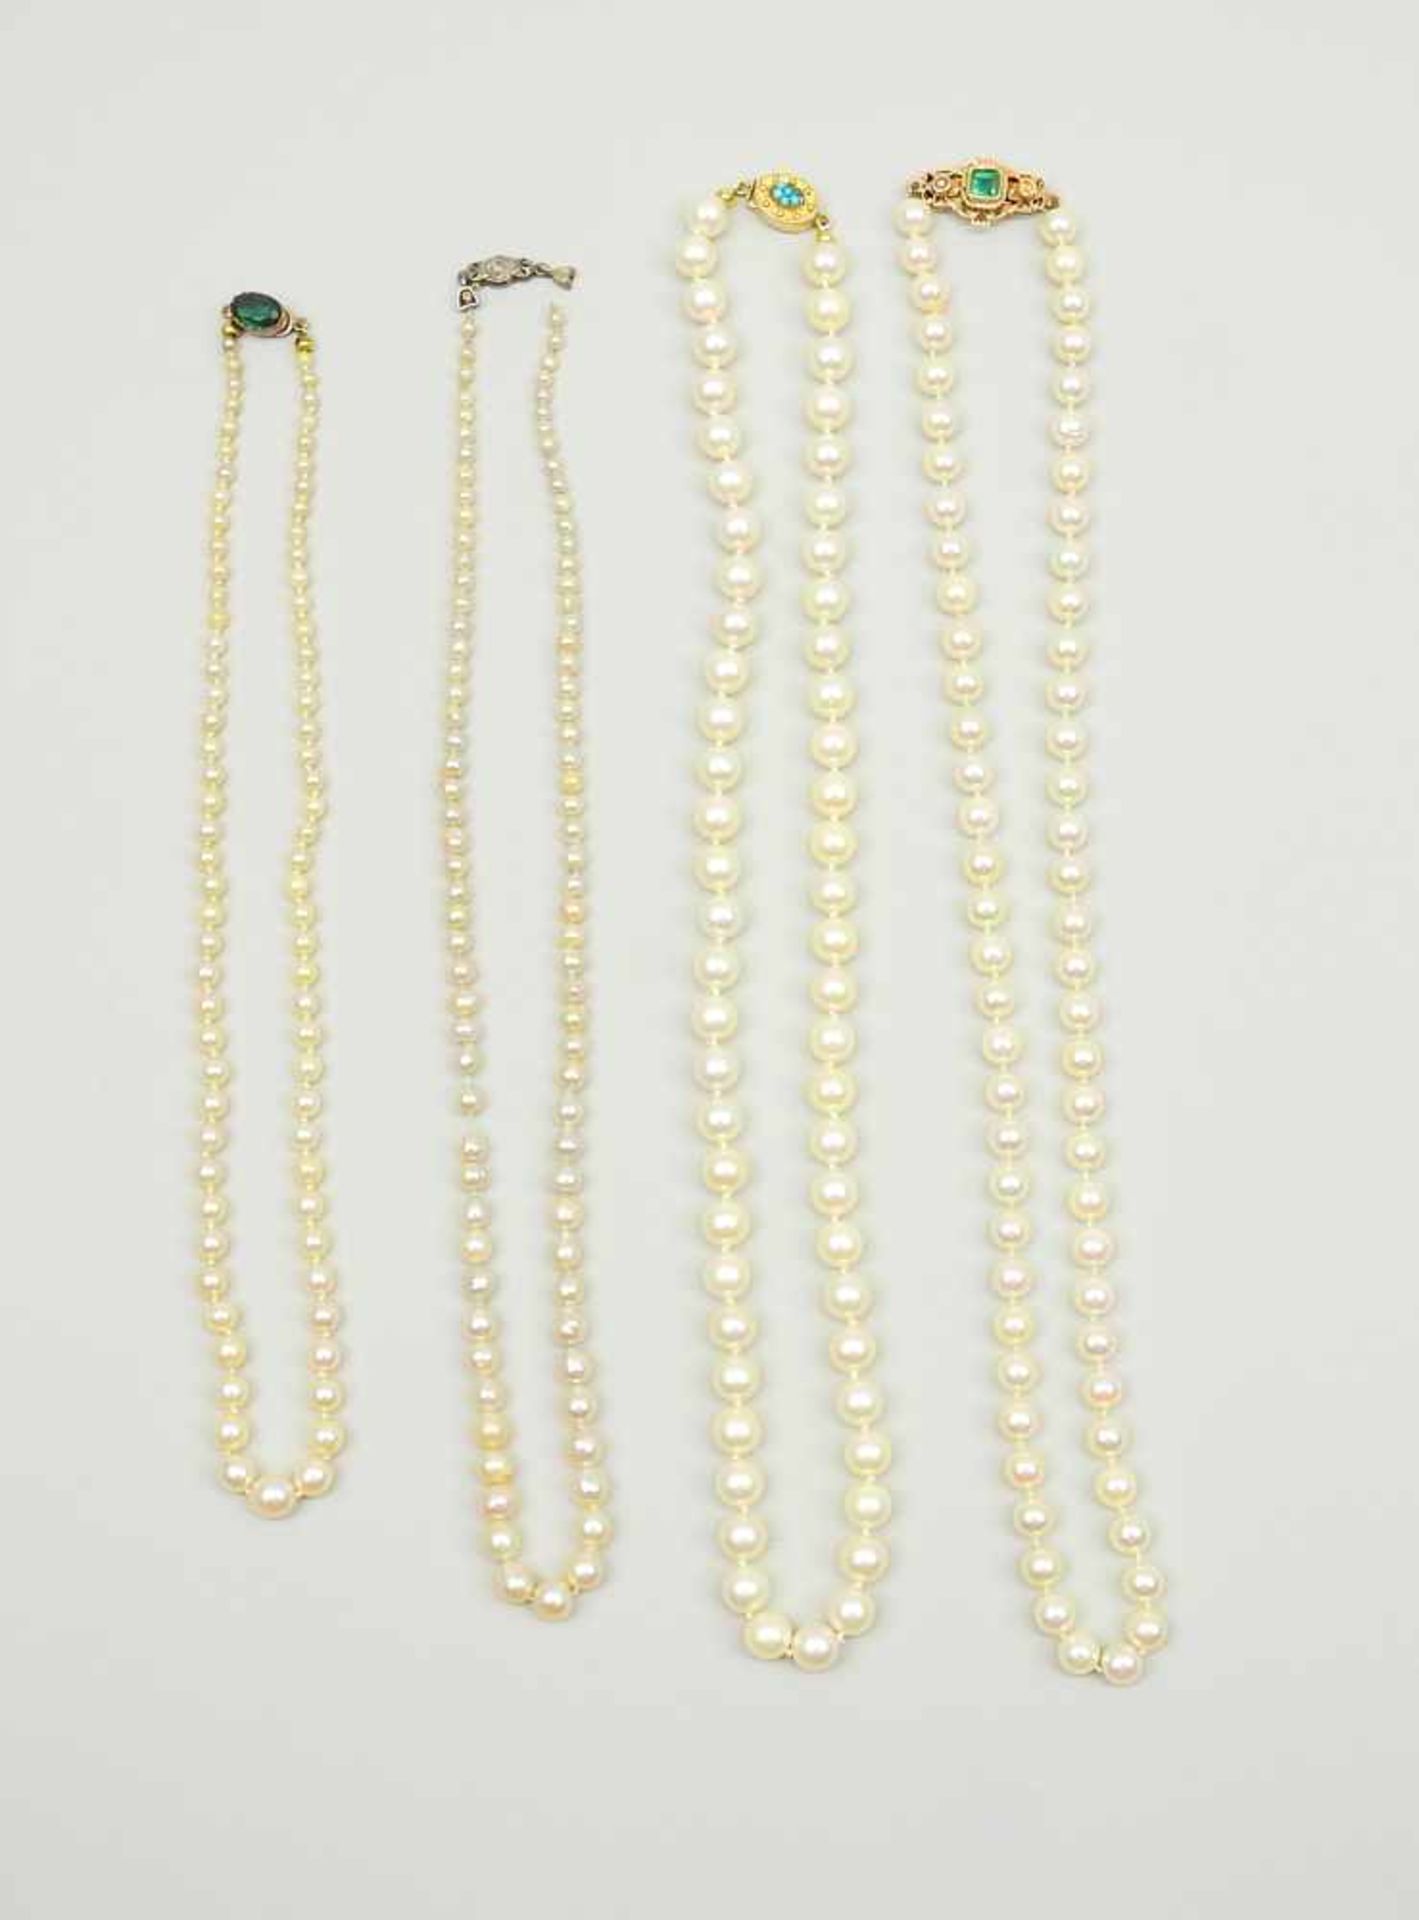 Vier PerlenkettenVier Perlenketten, drei mit Goldverschluss und Farbsteinbesatz. Ø ca. 0,3 cm, Ø